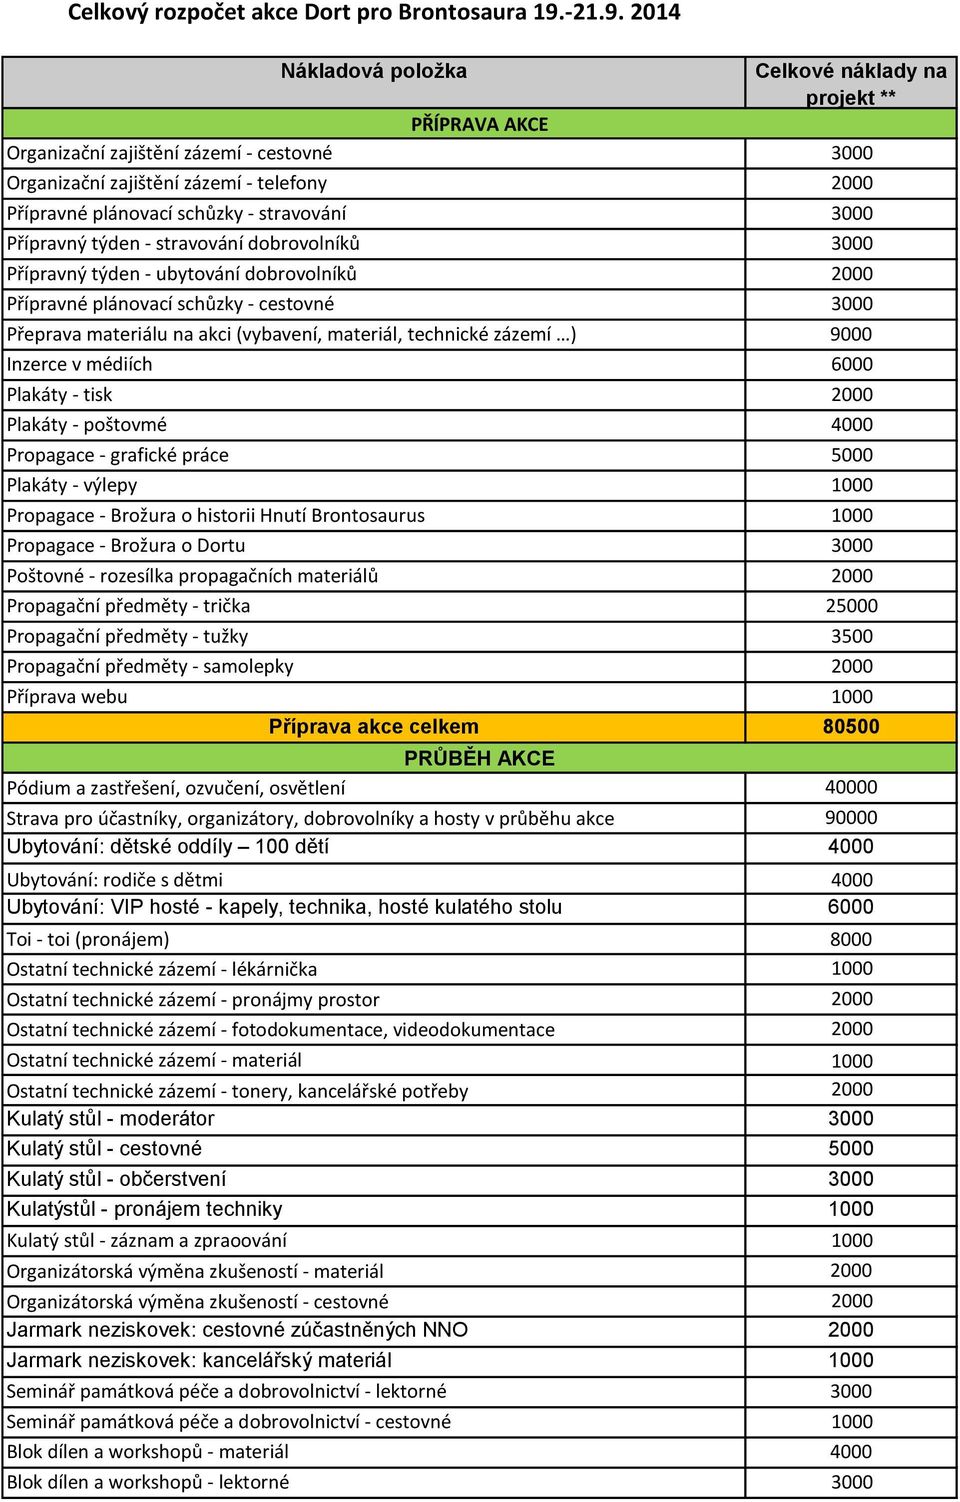 2014 Nákladová položka Celkové náklady na projekt ** PŘÍPRAVA AKCE Organizační zajištění zázemí - cestovné 3000 Organizační zajištění zázemí - telefony 2000 Přípravné plánovací schůzky - stravování